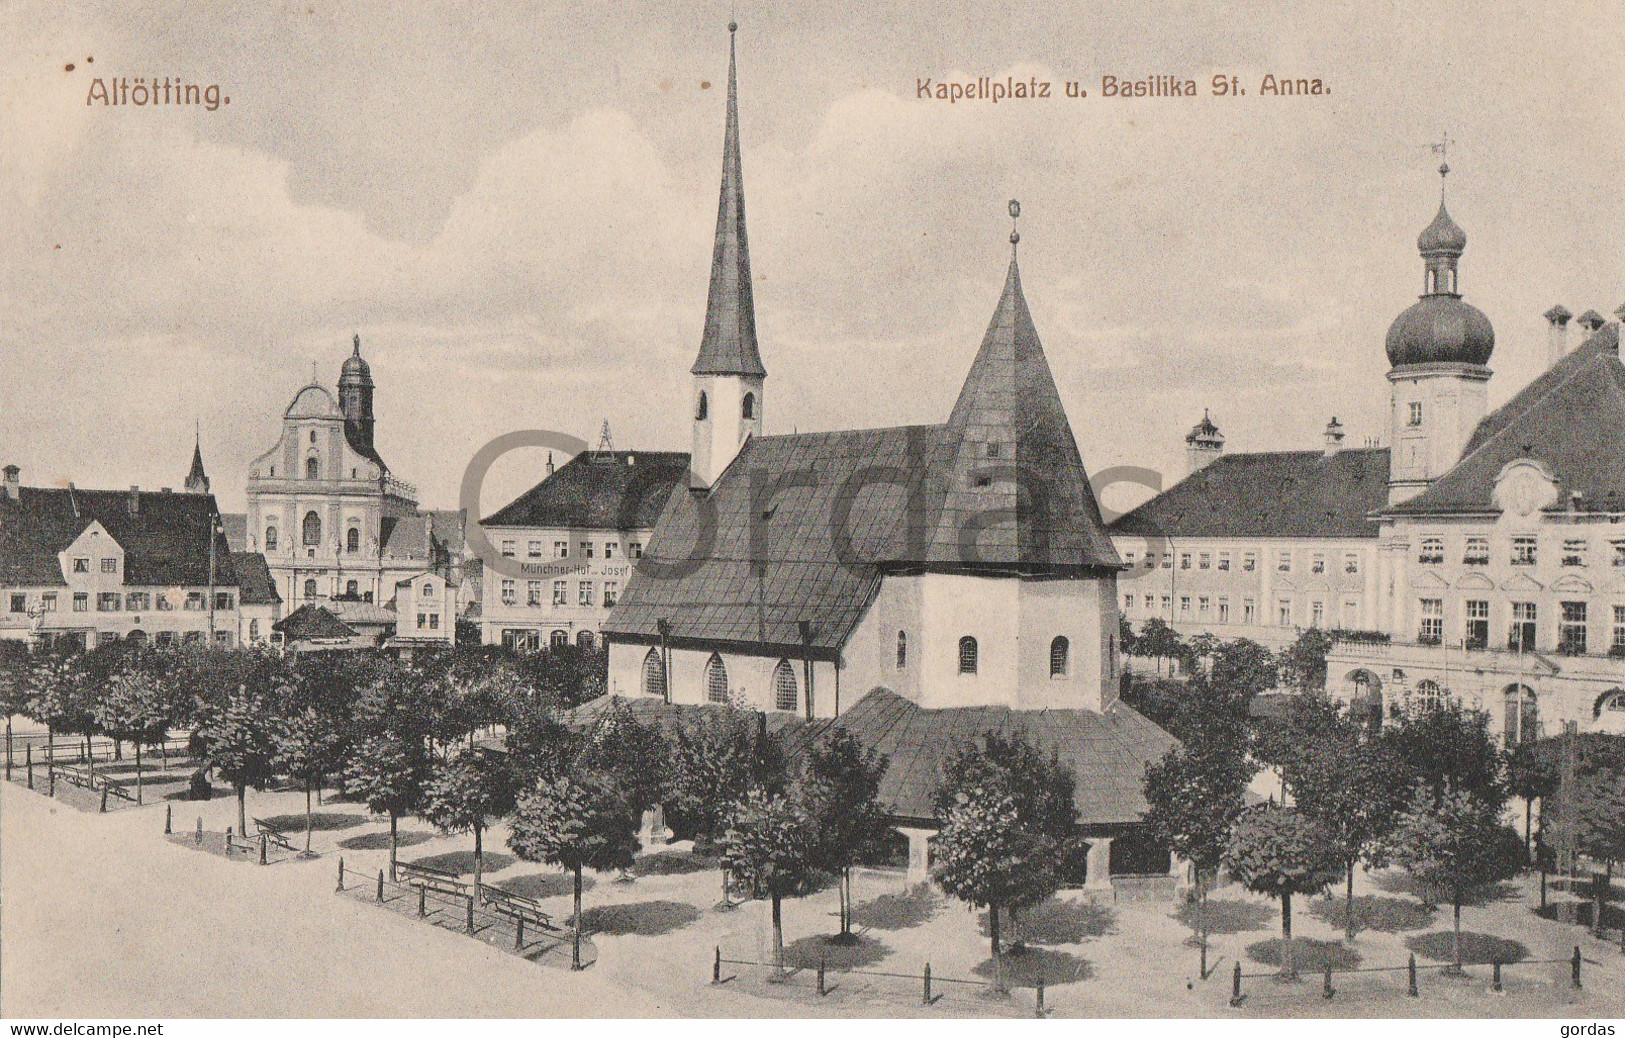 Germany - Altotting - Kapellplatz Und Basilika St. Anna - Altoetting